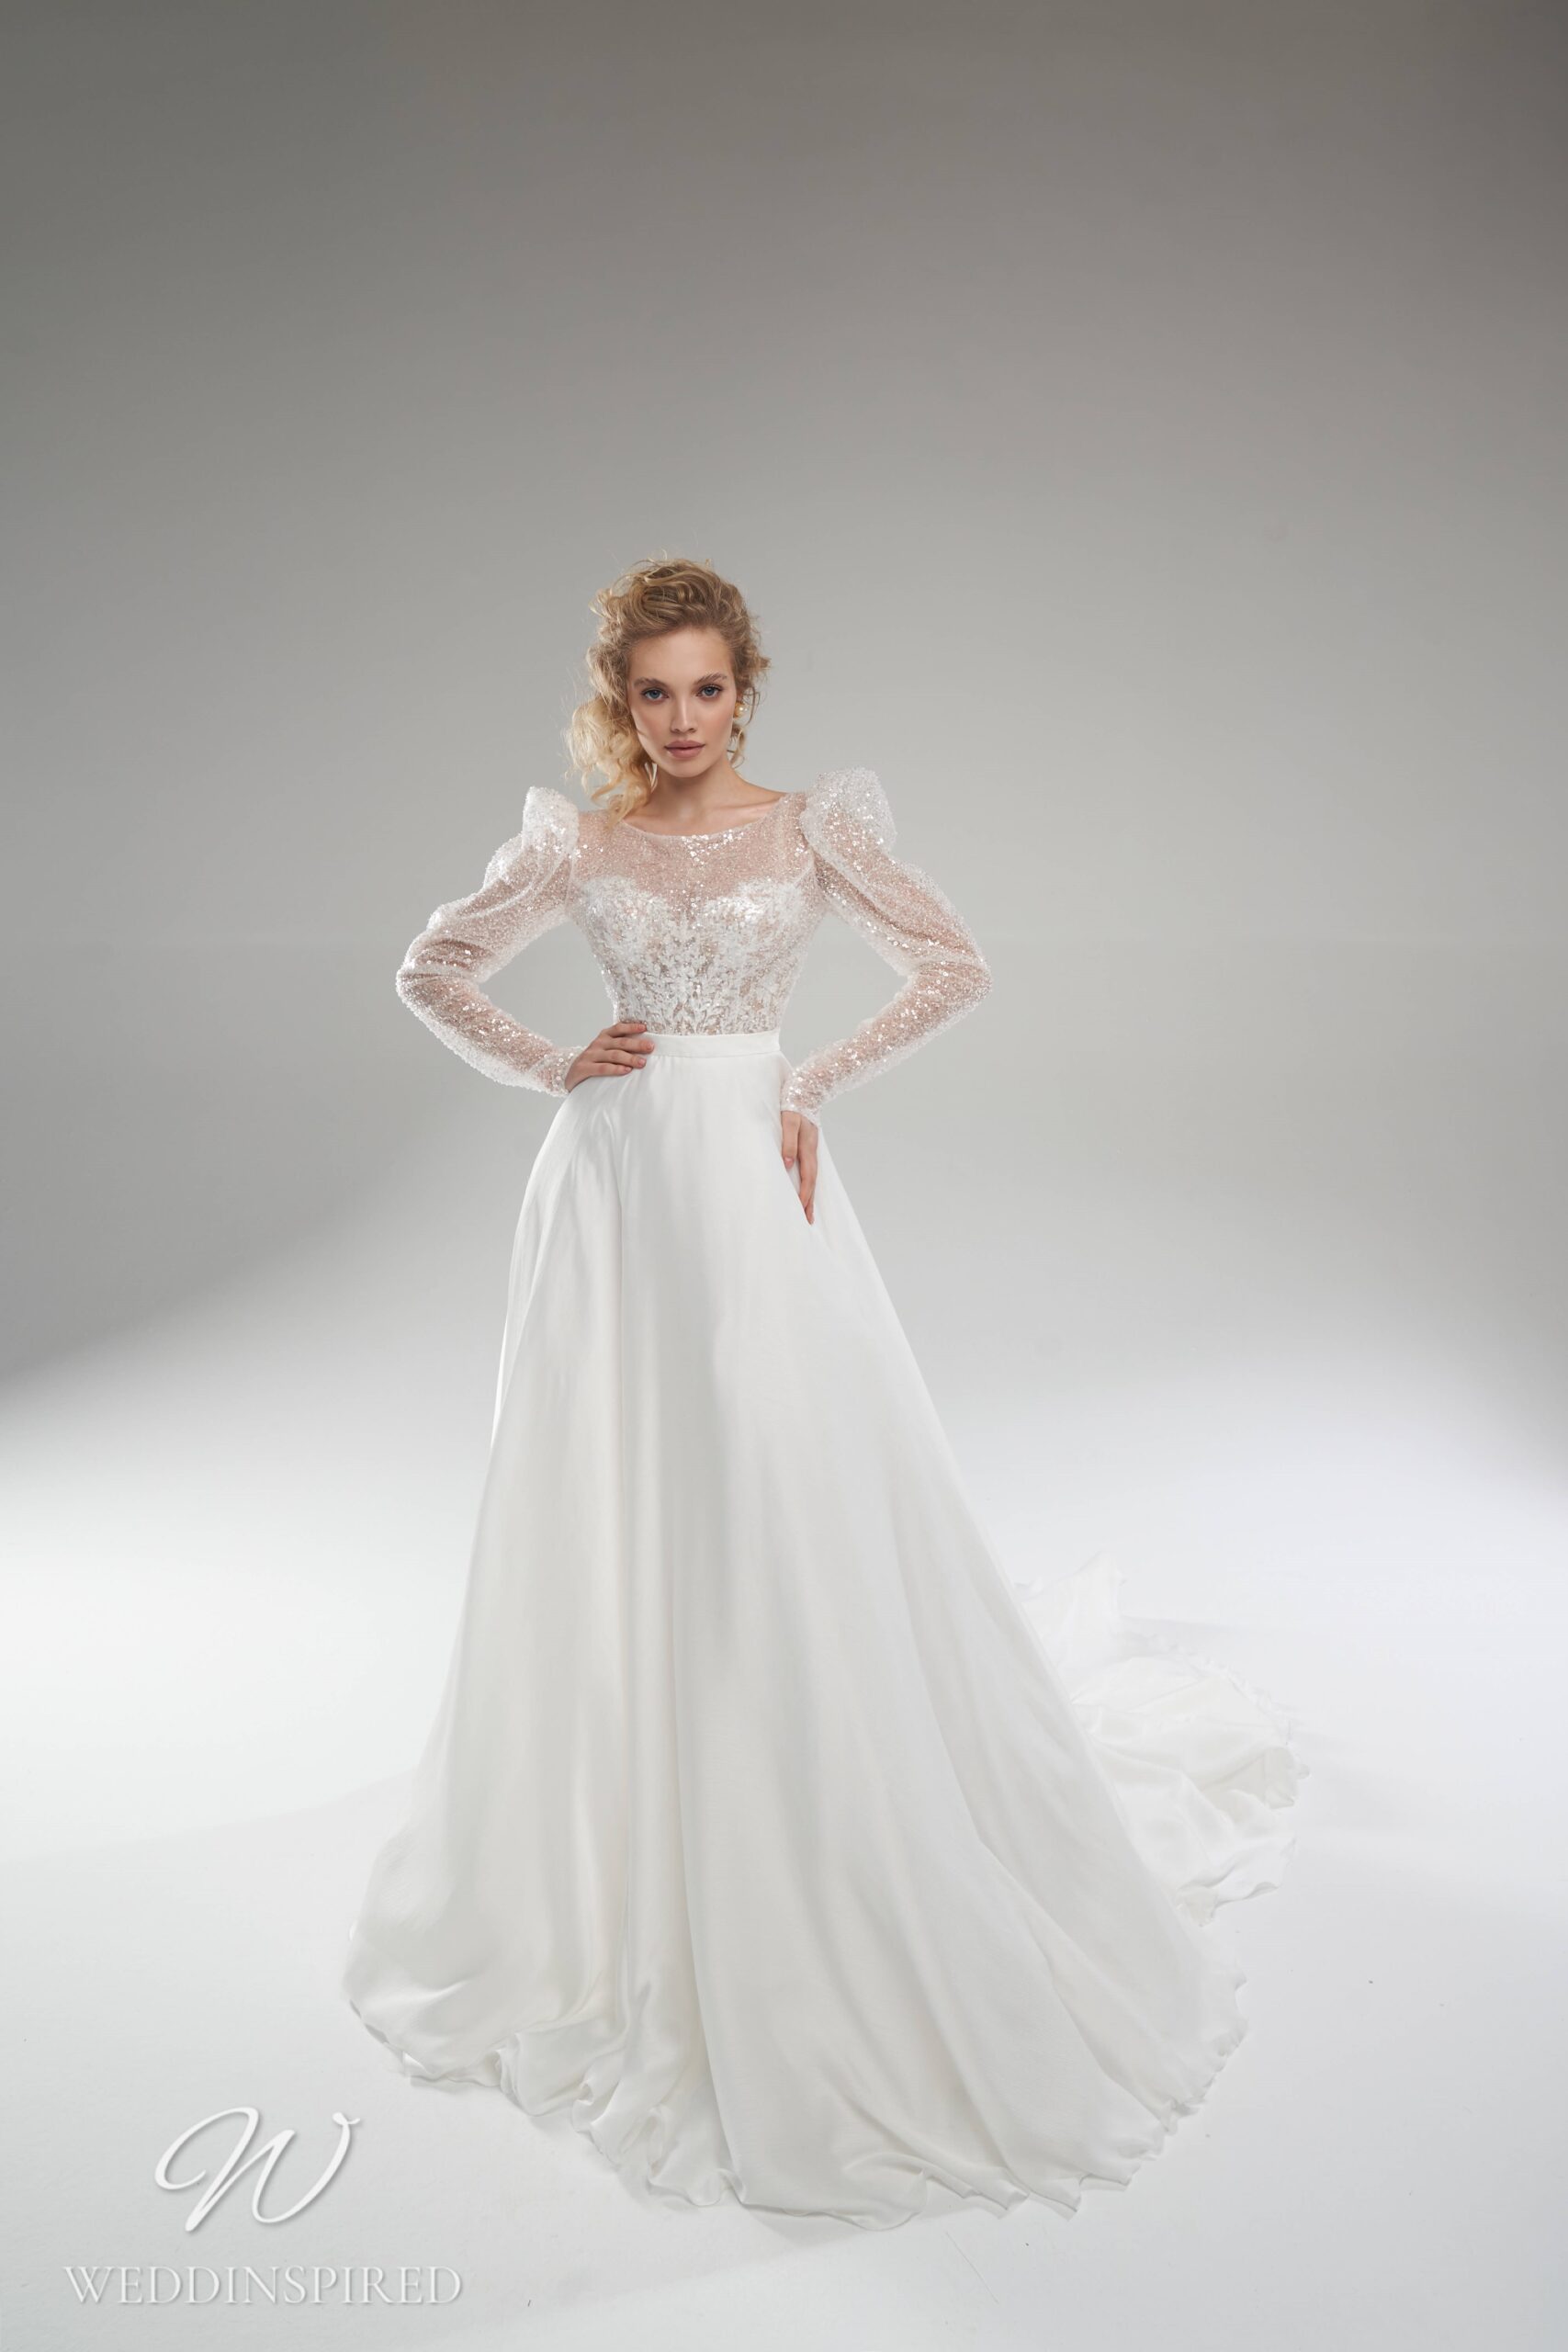 Rara Avis 2022 sparkly tulle satin A-line wedding dress long sleeves